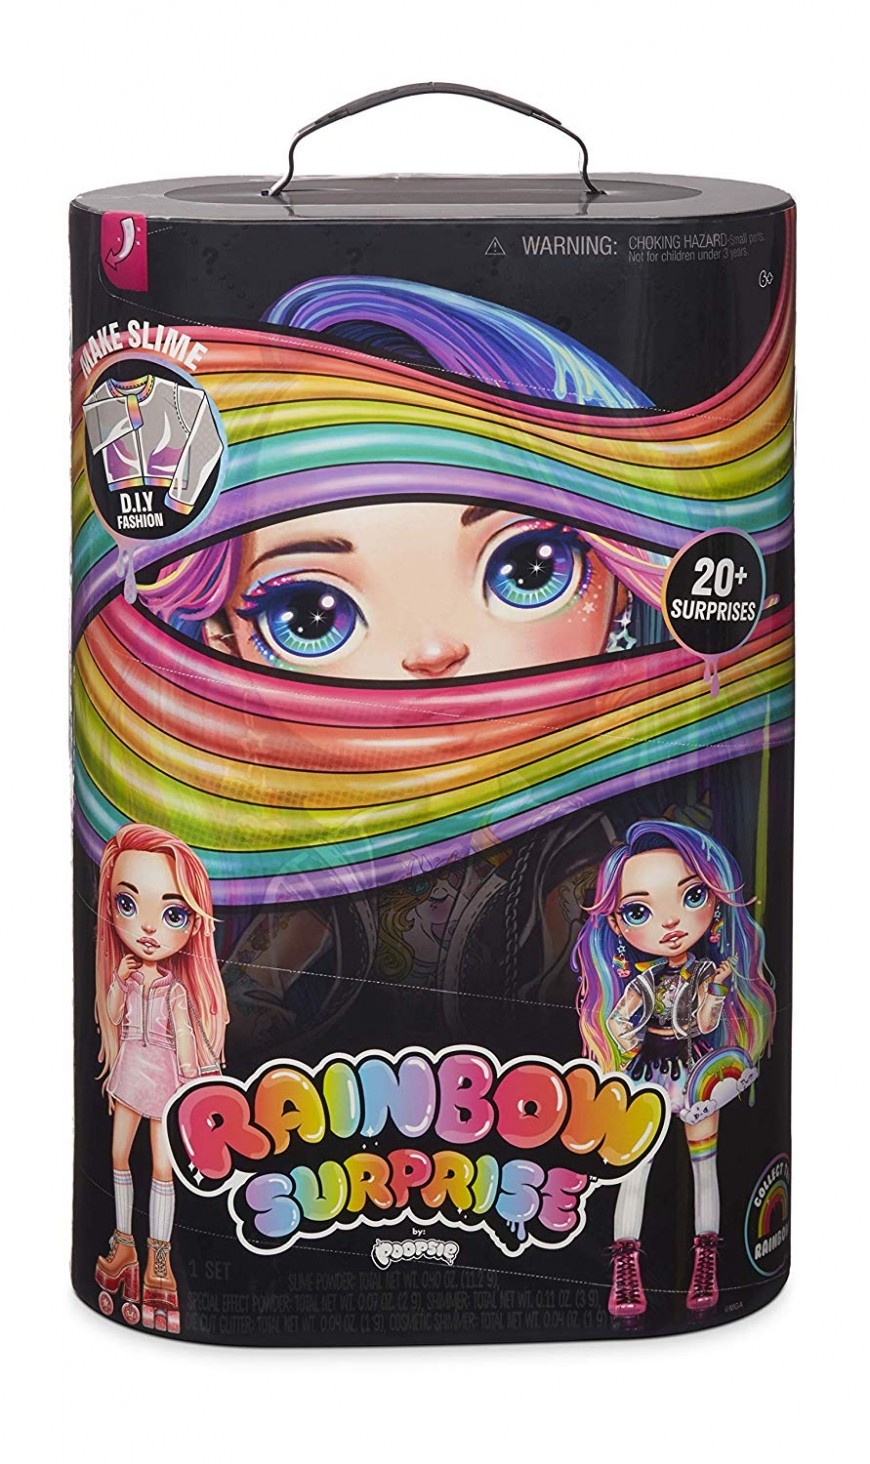 Poopsie Rainbow Surprises Rainbow or Pink doll